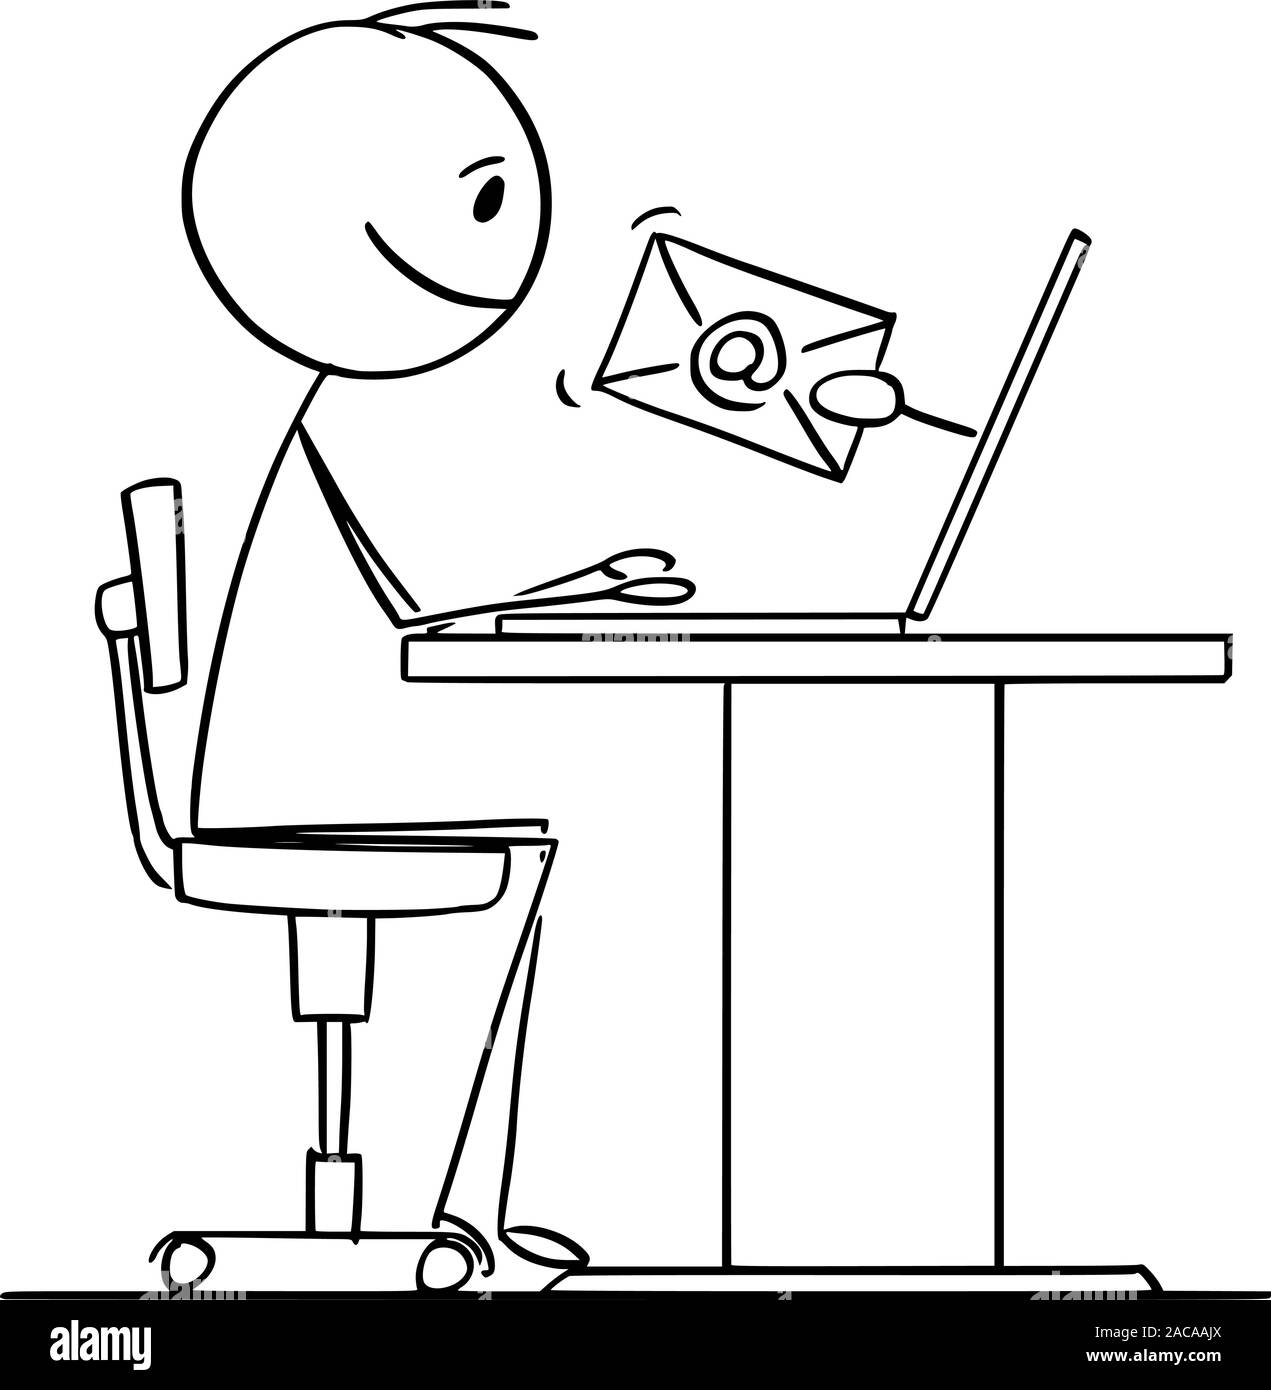 Vector cartoon stick figura disegno illustrazione concettuale dell'uomo o imprenditore lavorando sul computer e la ricezione di un messaggio di posta elettronica. Illustrazione Vettoriale